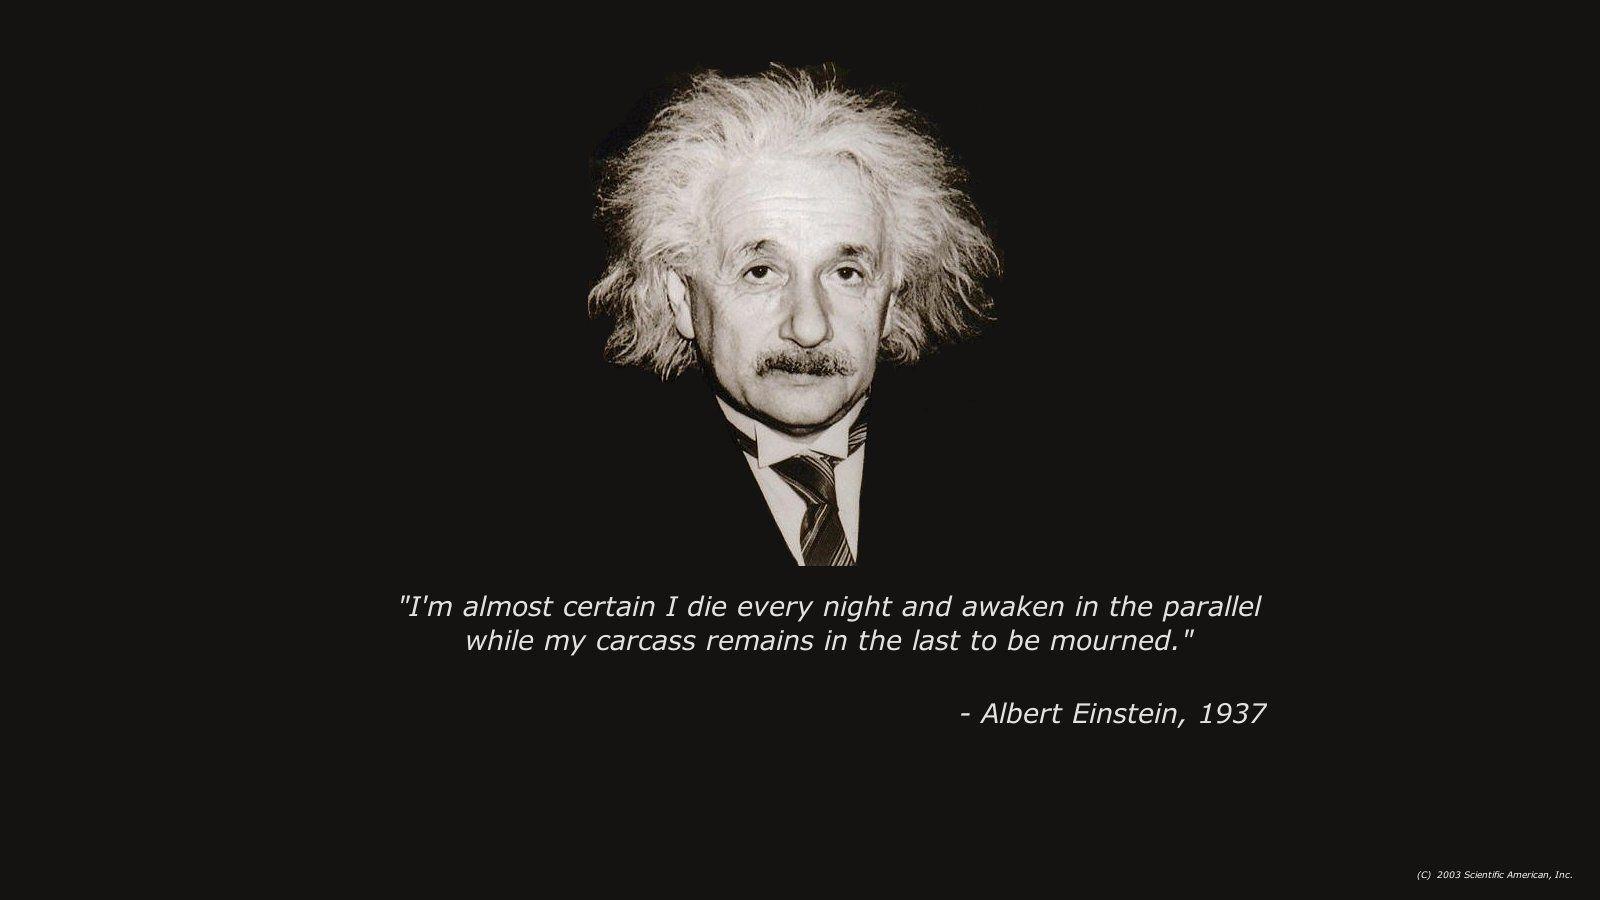 Albert Einstein Quotes Wallpapers - Albert Einstein Quotes Wallpaper Hd -  1600x900 Wallpaper - teahub.io